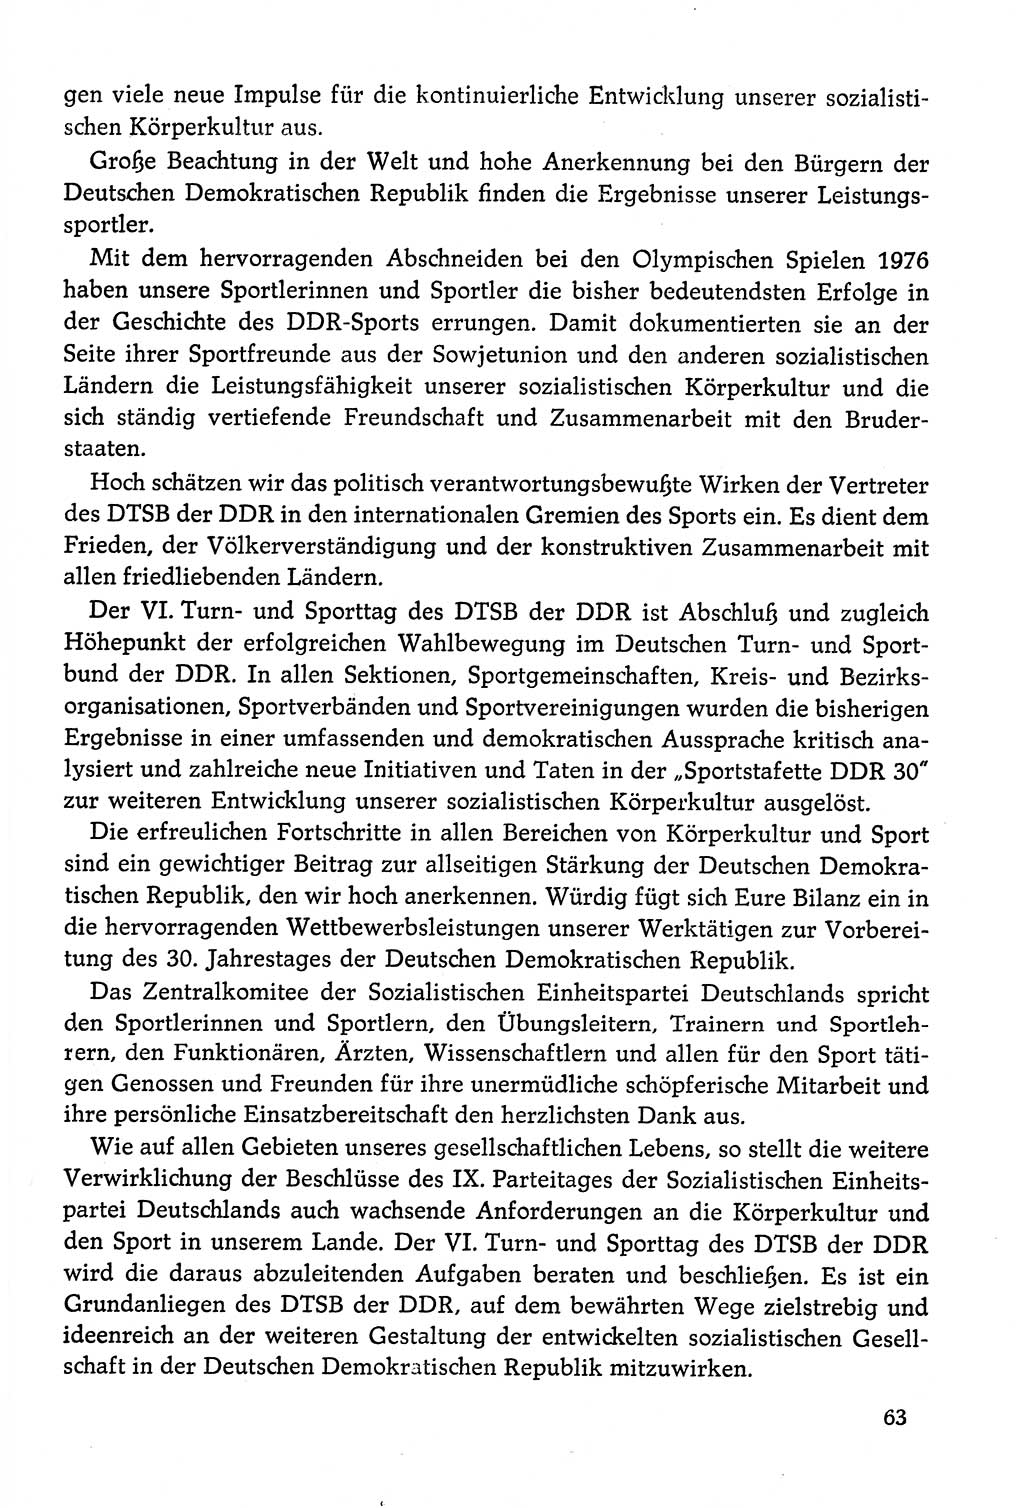 Dokumente der Sozialistischen Einheitspartei Deutschlands (SED) [Deutsche Demokratische Republik (DDR)] 1978-1979, Seite 63 (Dok. SED DDR 1978-1979, S. 63)